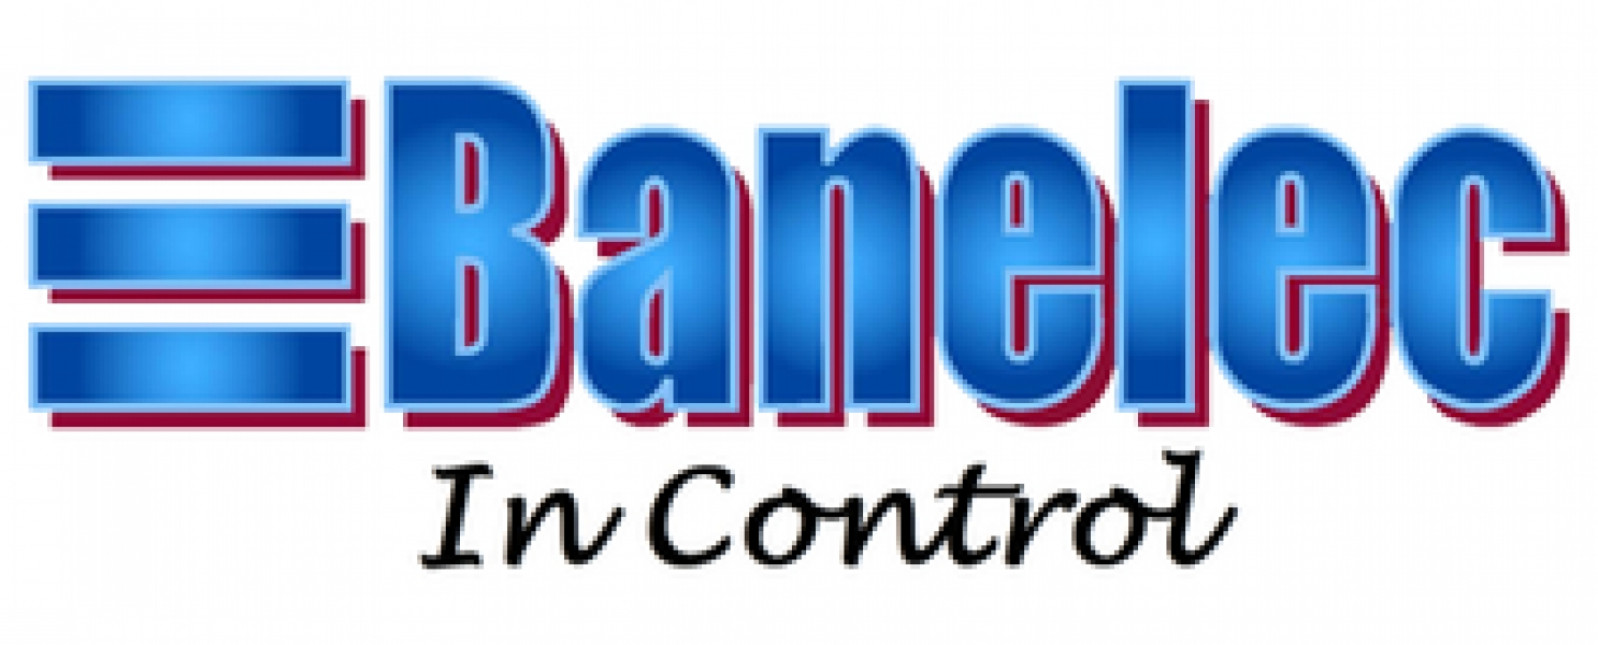 Banelec Awarded Safety Accreditation